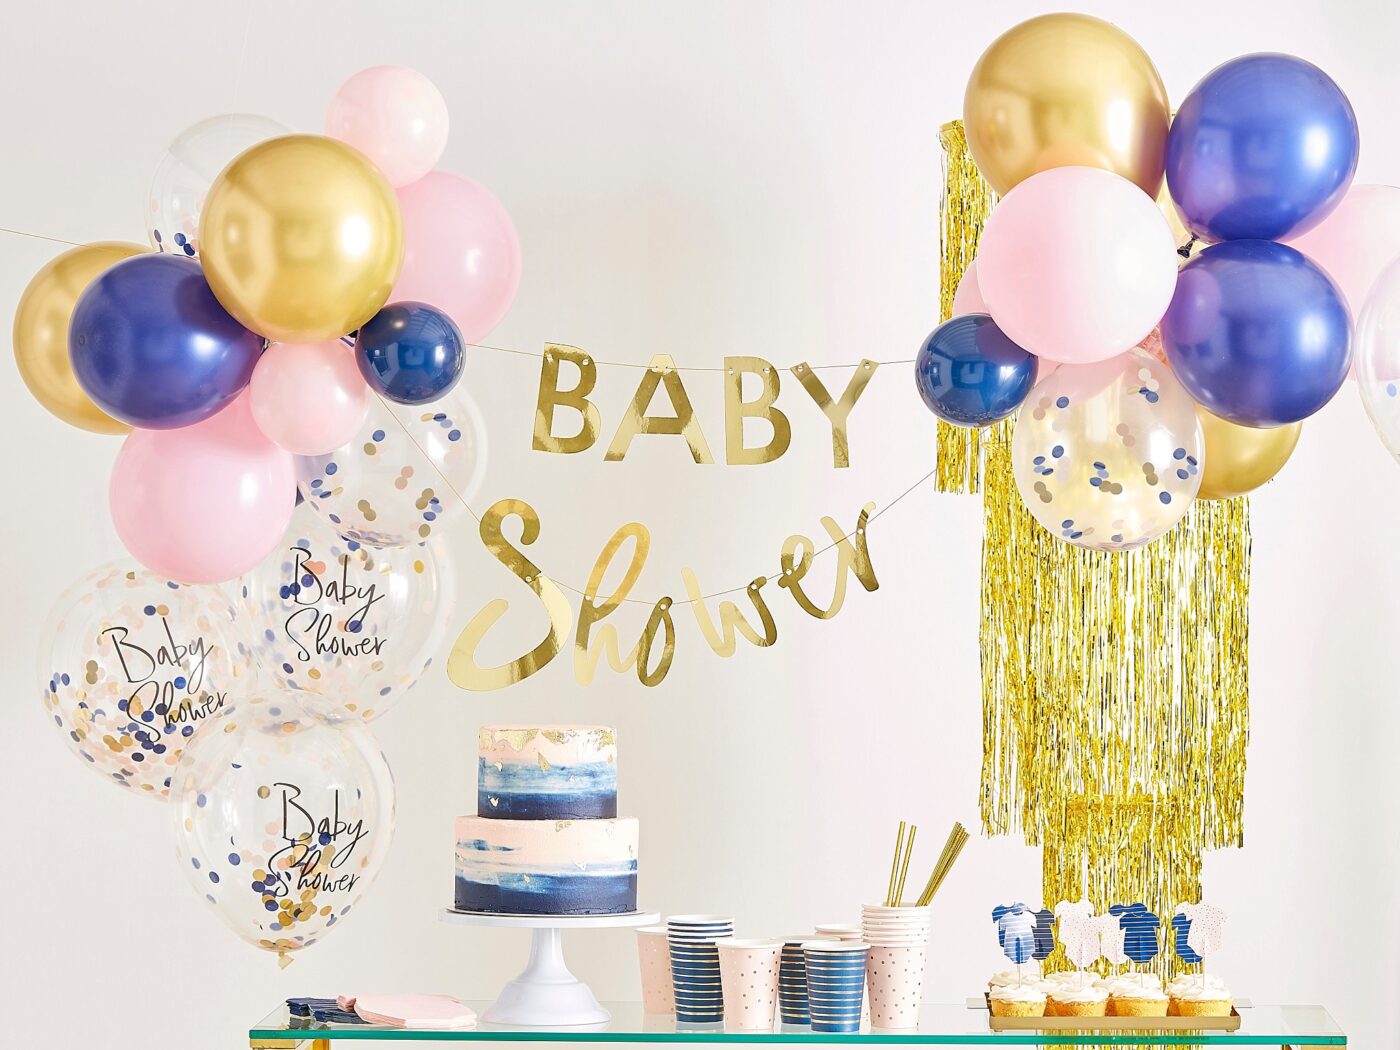 Nieuwe babyshower collecties, partydeco